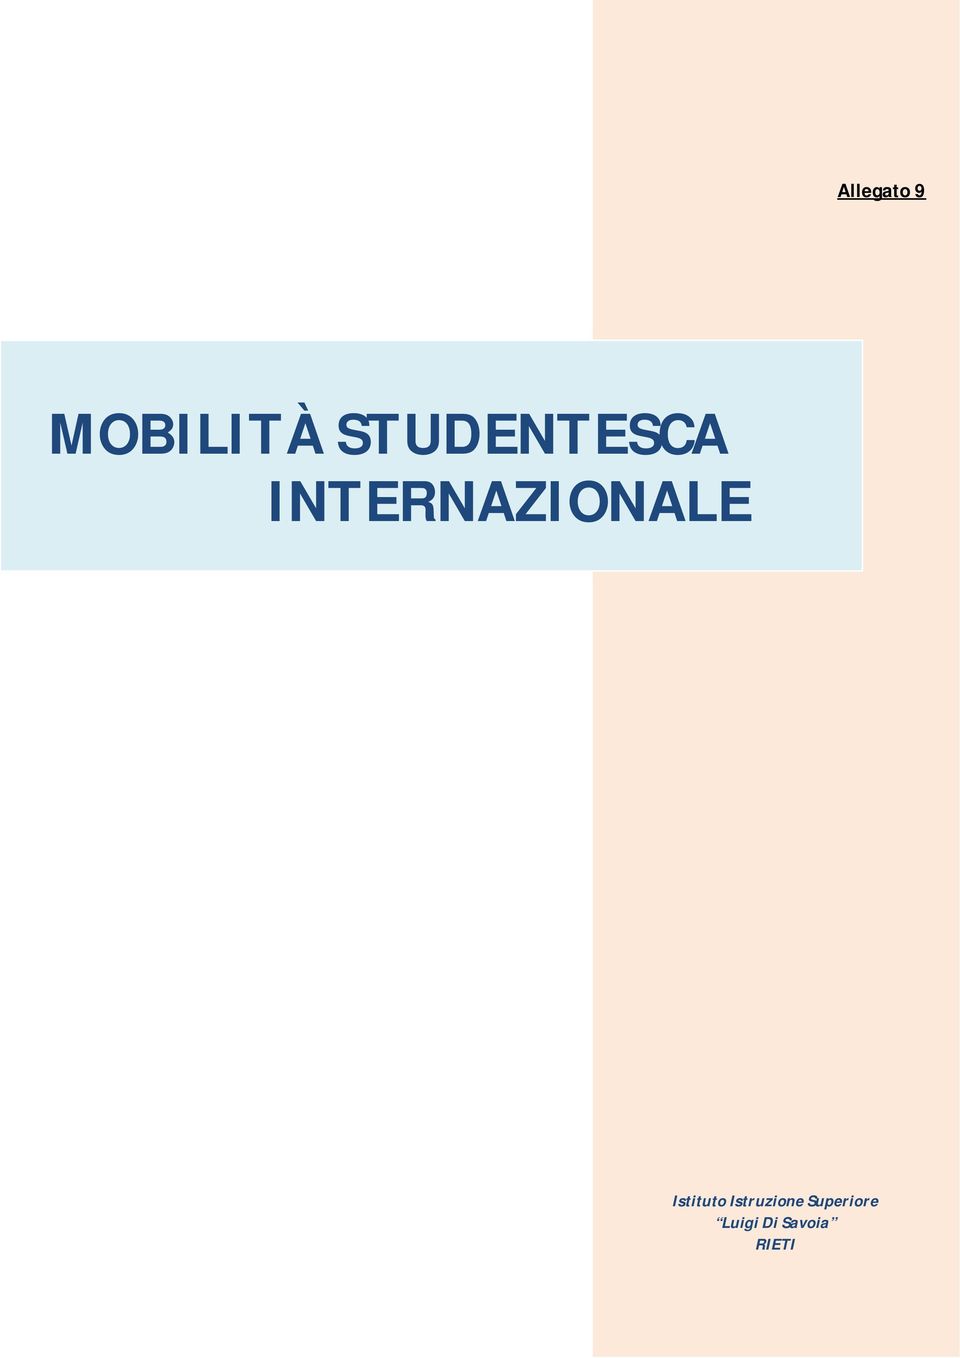 INTERNAZIONALE Istituto